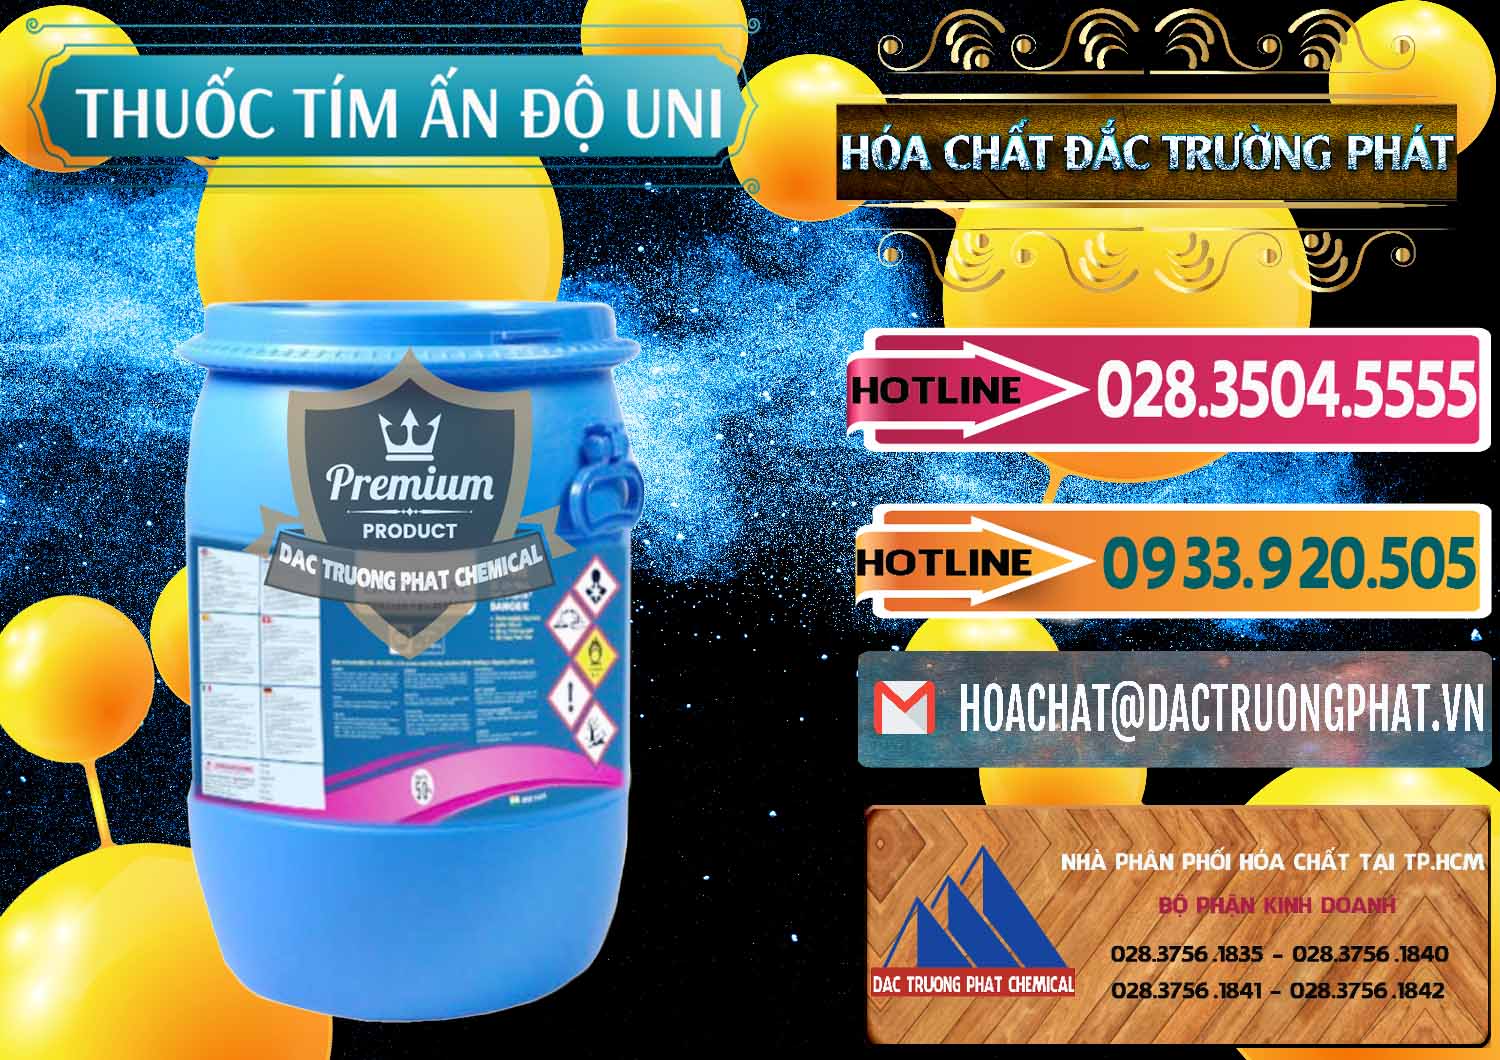 Phân phối - bán Thuốc Tím - KMNO4 Universal Ấn Độ India - 0419 - Công ty chuyên bán & cung cấp hóa chất tại TP.HCM - dactruongphat.vn